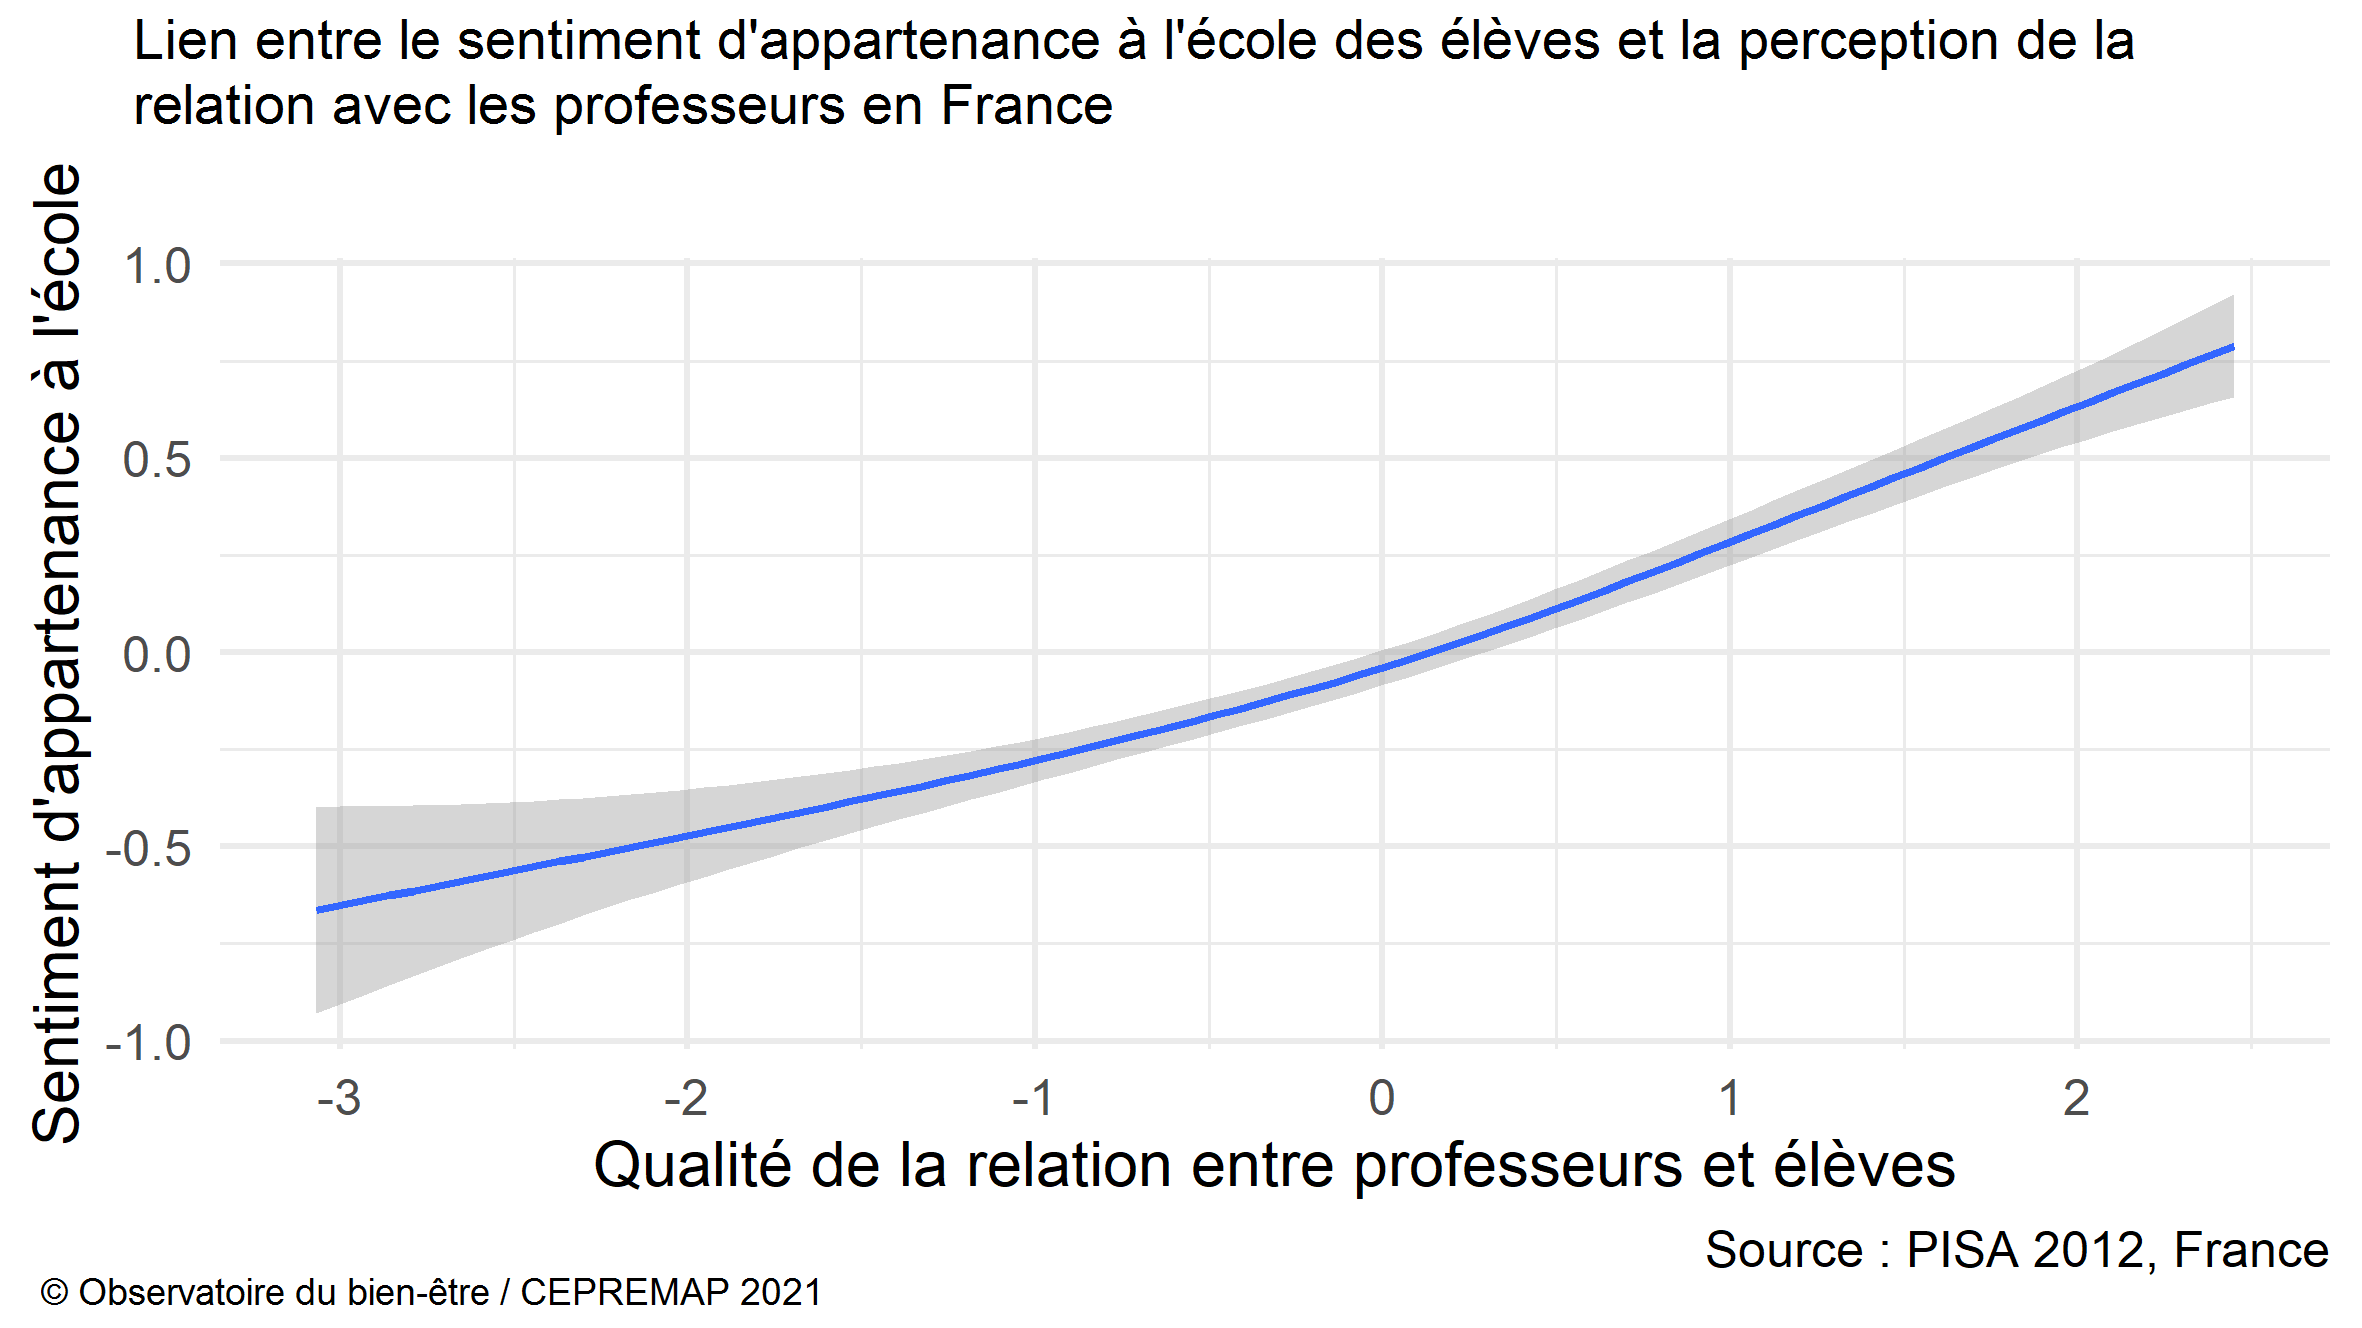 Figure : Lien entre le sentiment d'appartenance à l'école des élèveeesss et la perception de la relation avec les professeurs en France